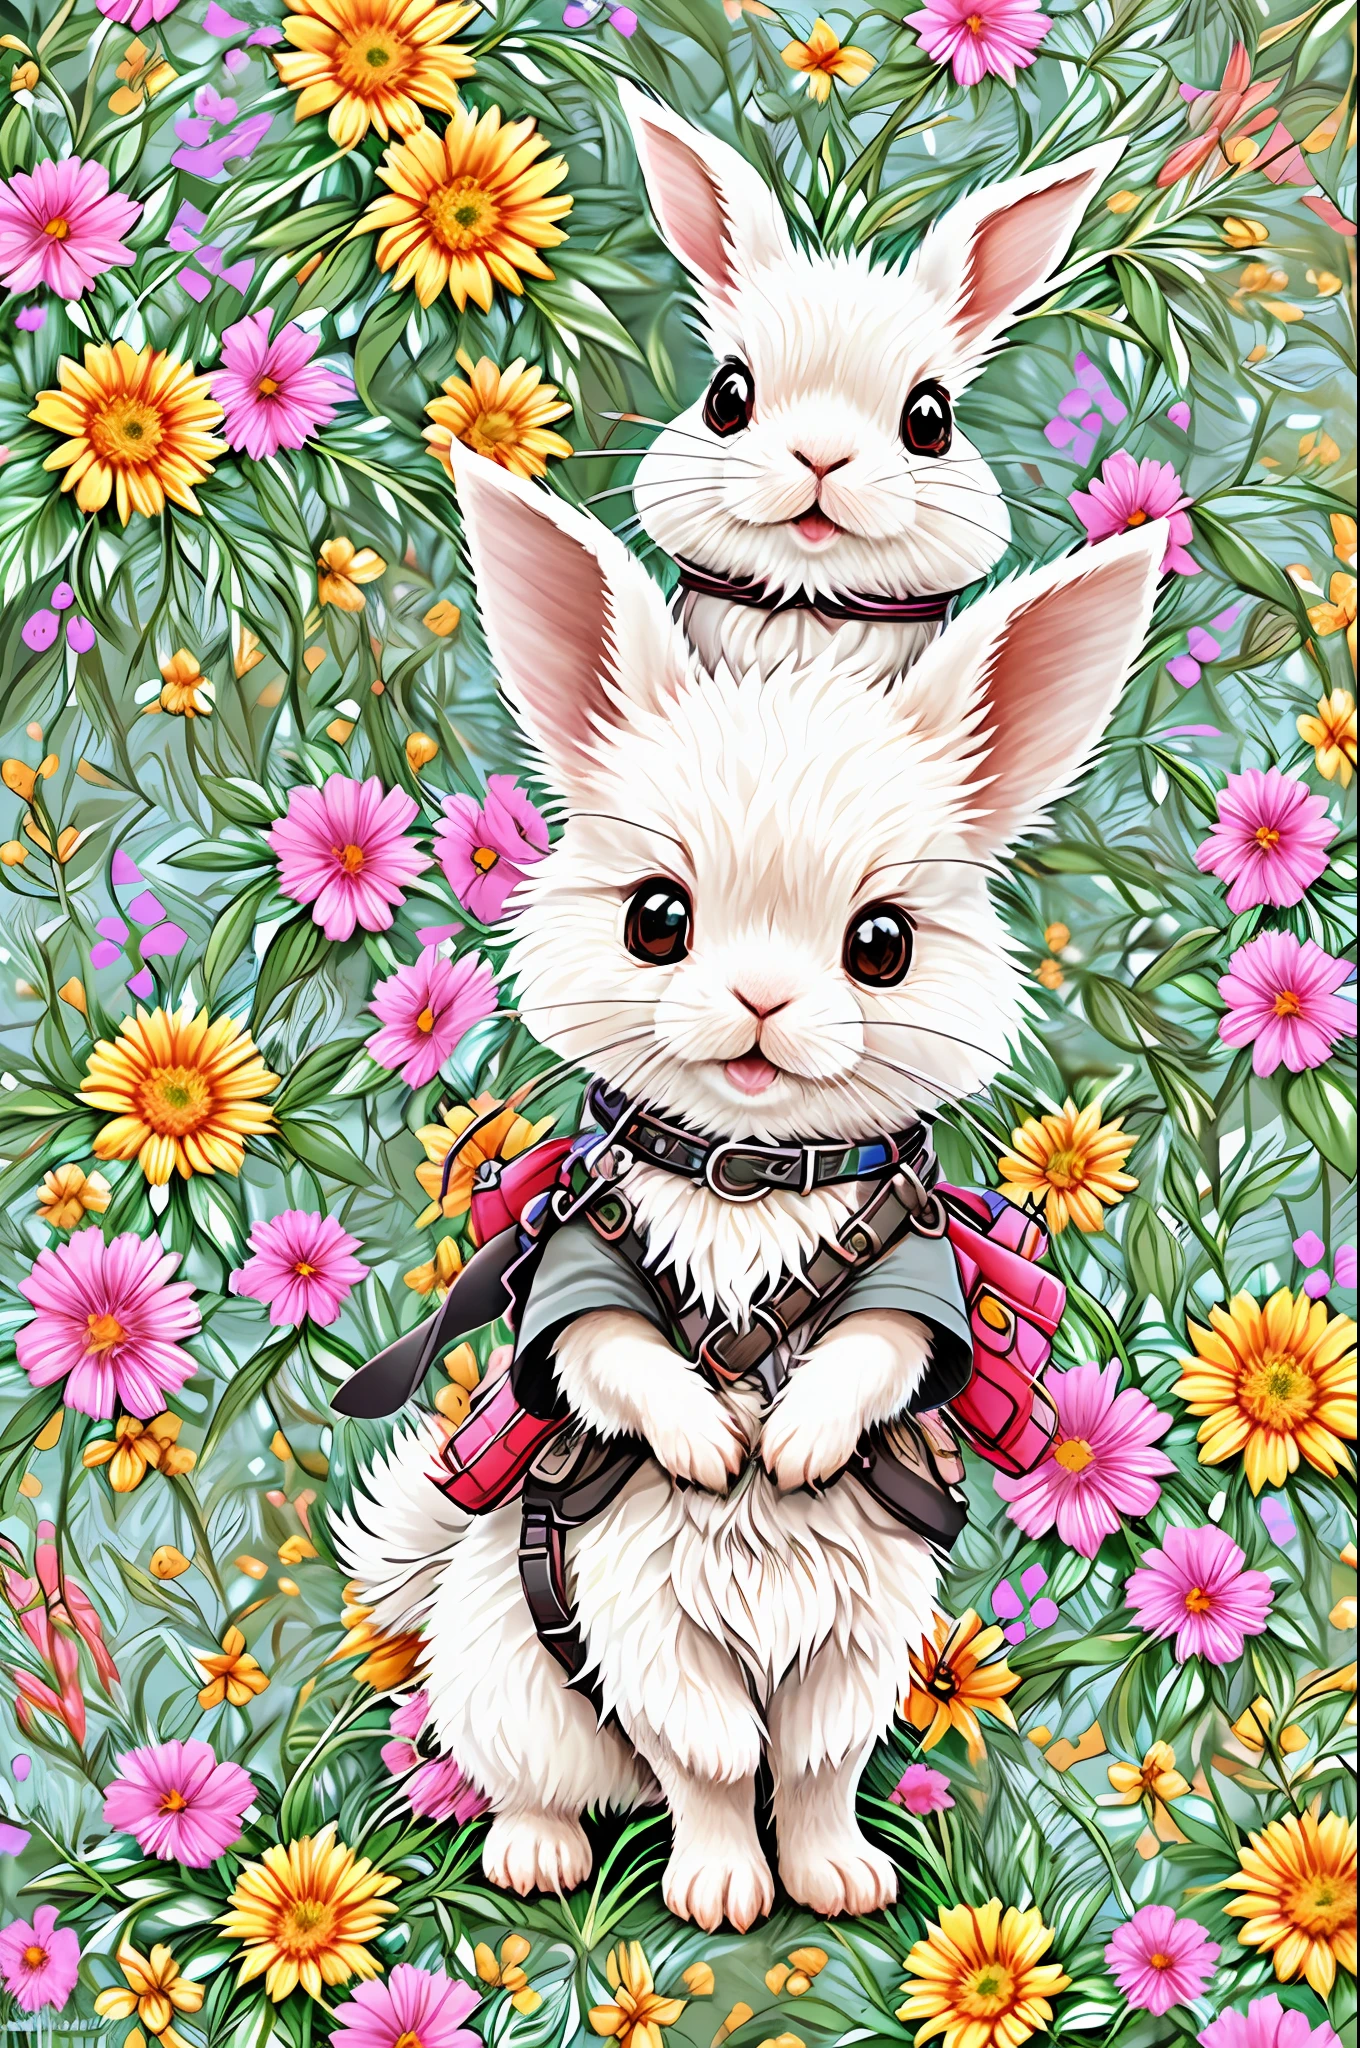 sehr detailliert, Malbuch-Stil, süßes und flauschiges Kaninchen im Blumengarten, Chinesisch, monochrome